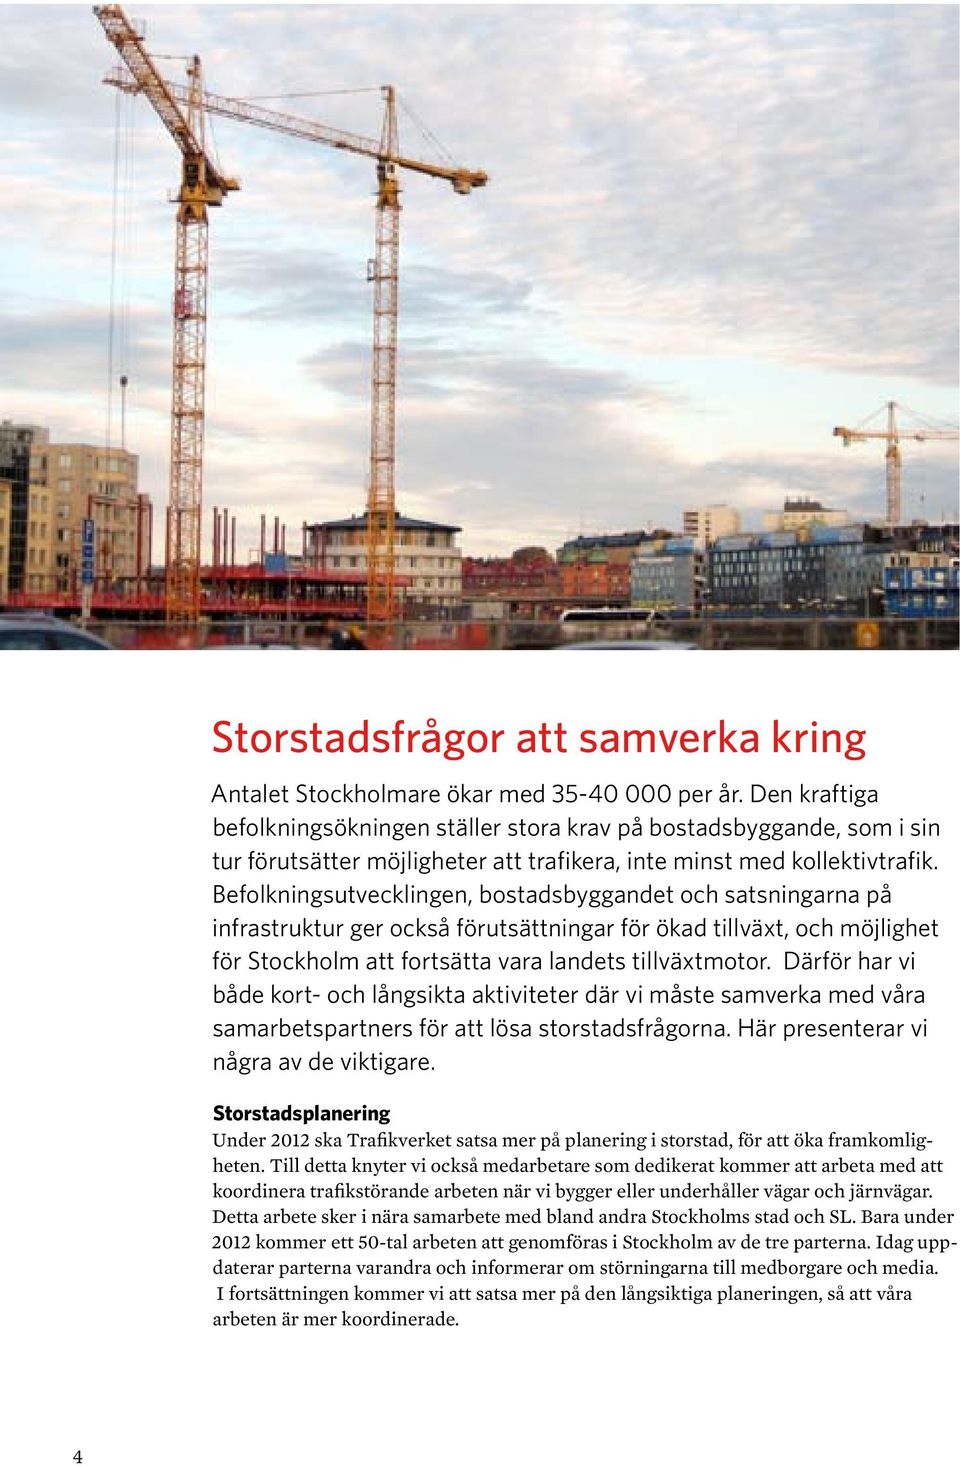 Befolkningsutvecklingen, bostadsbyggandet och satsningarna på infra struktur ger också förutsättningar för ökad tillväxt, och möjlighet för Stockholm att fortsätta vara landets tillväxtmotor.